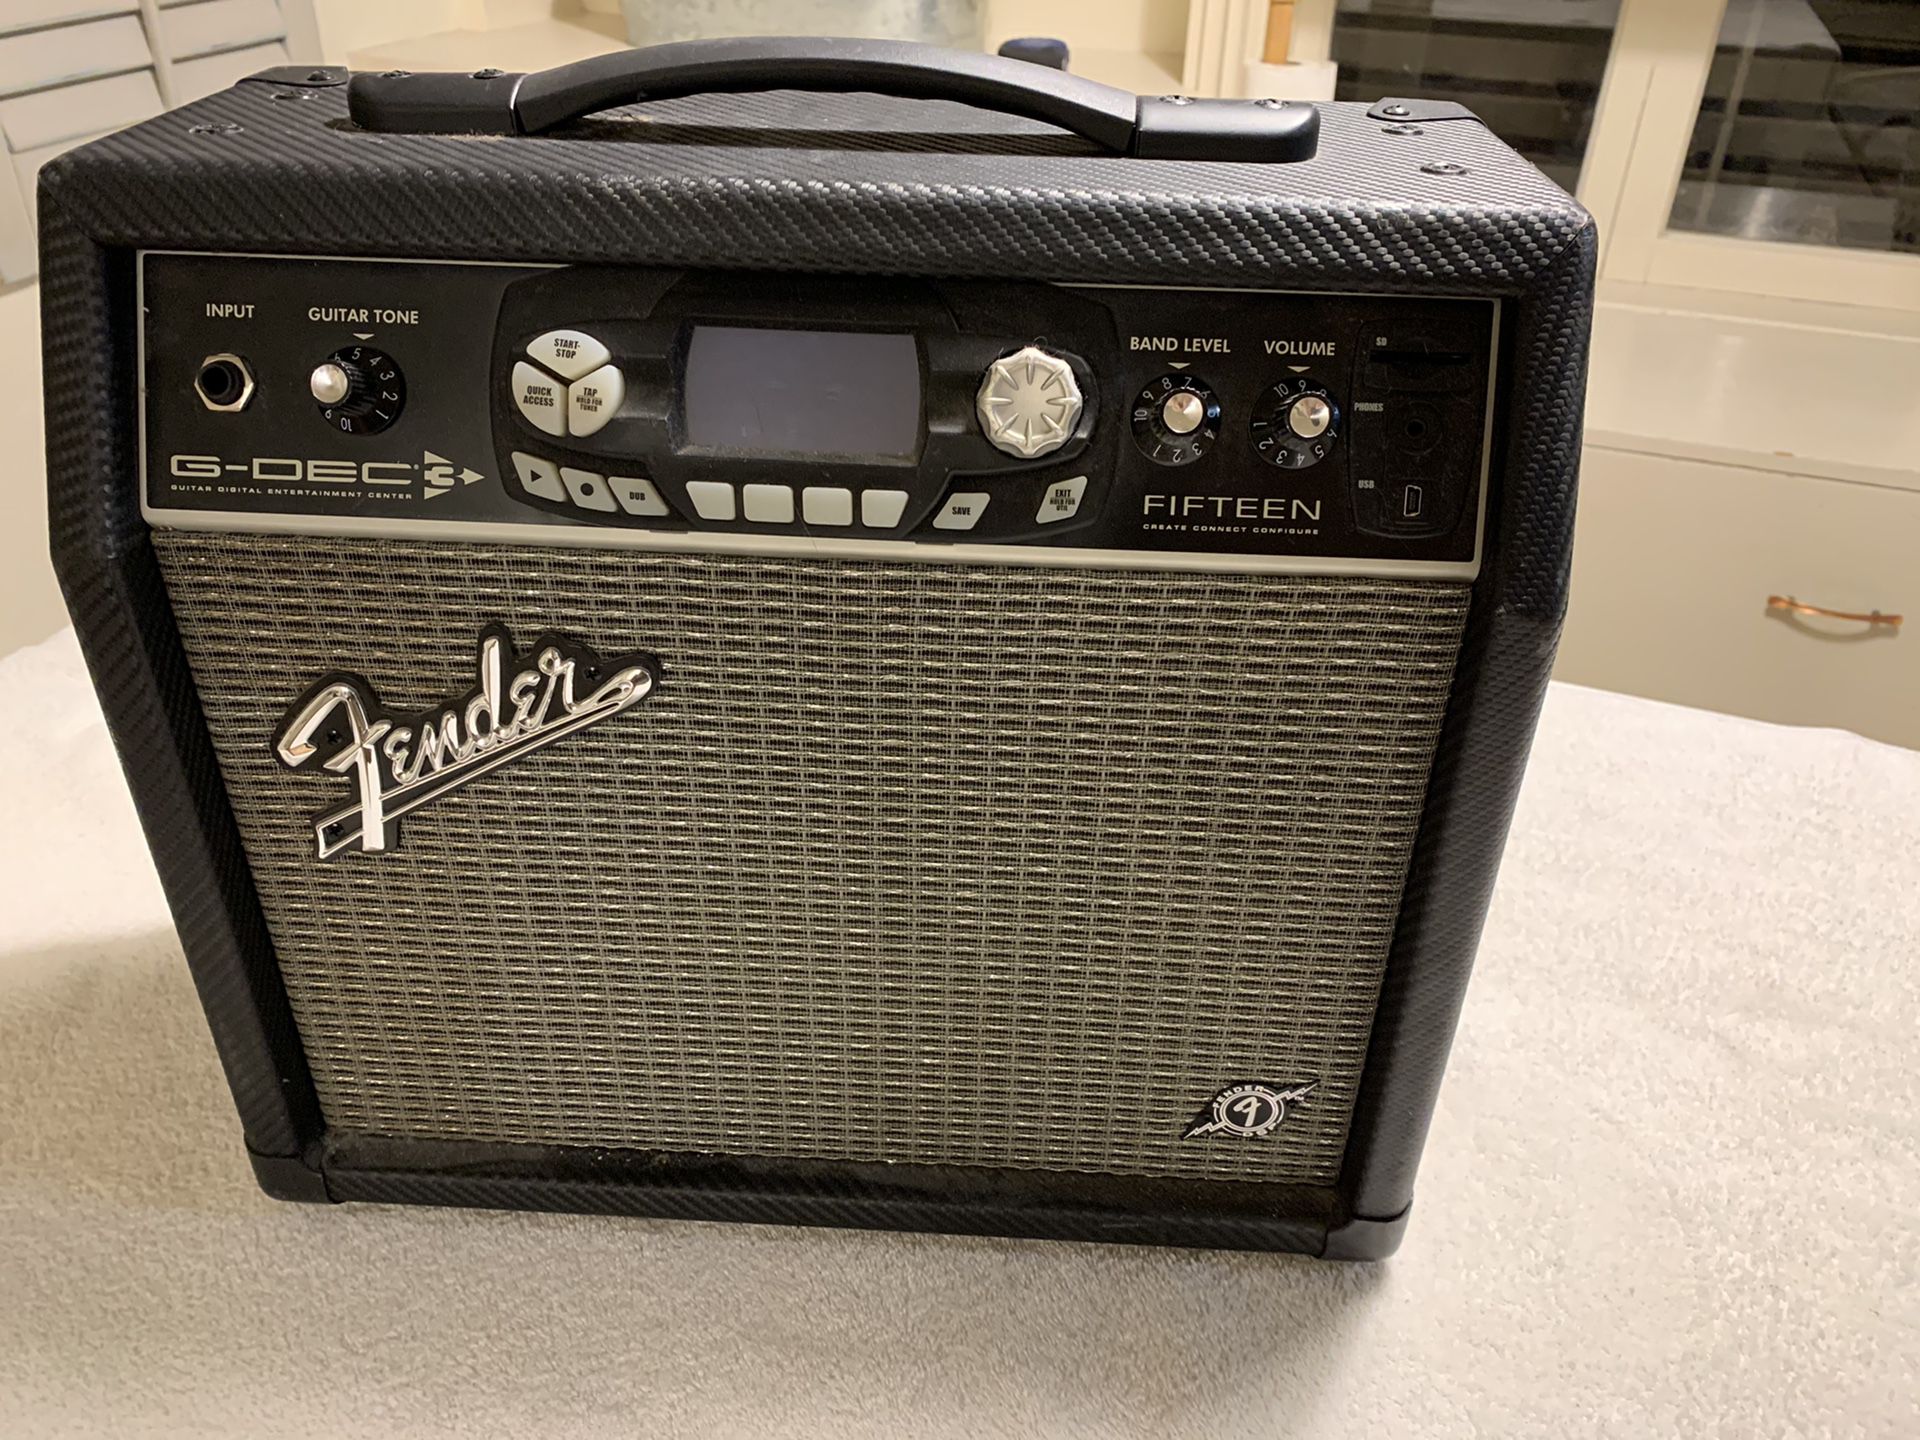 Fender G-Dec 3 practice amp